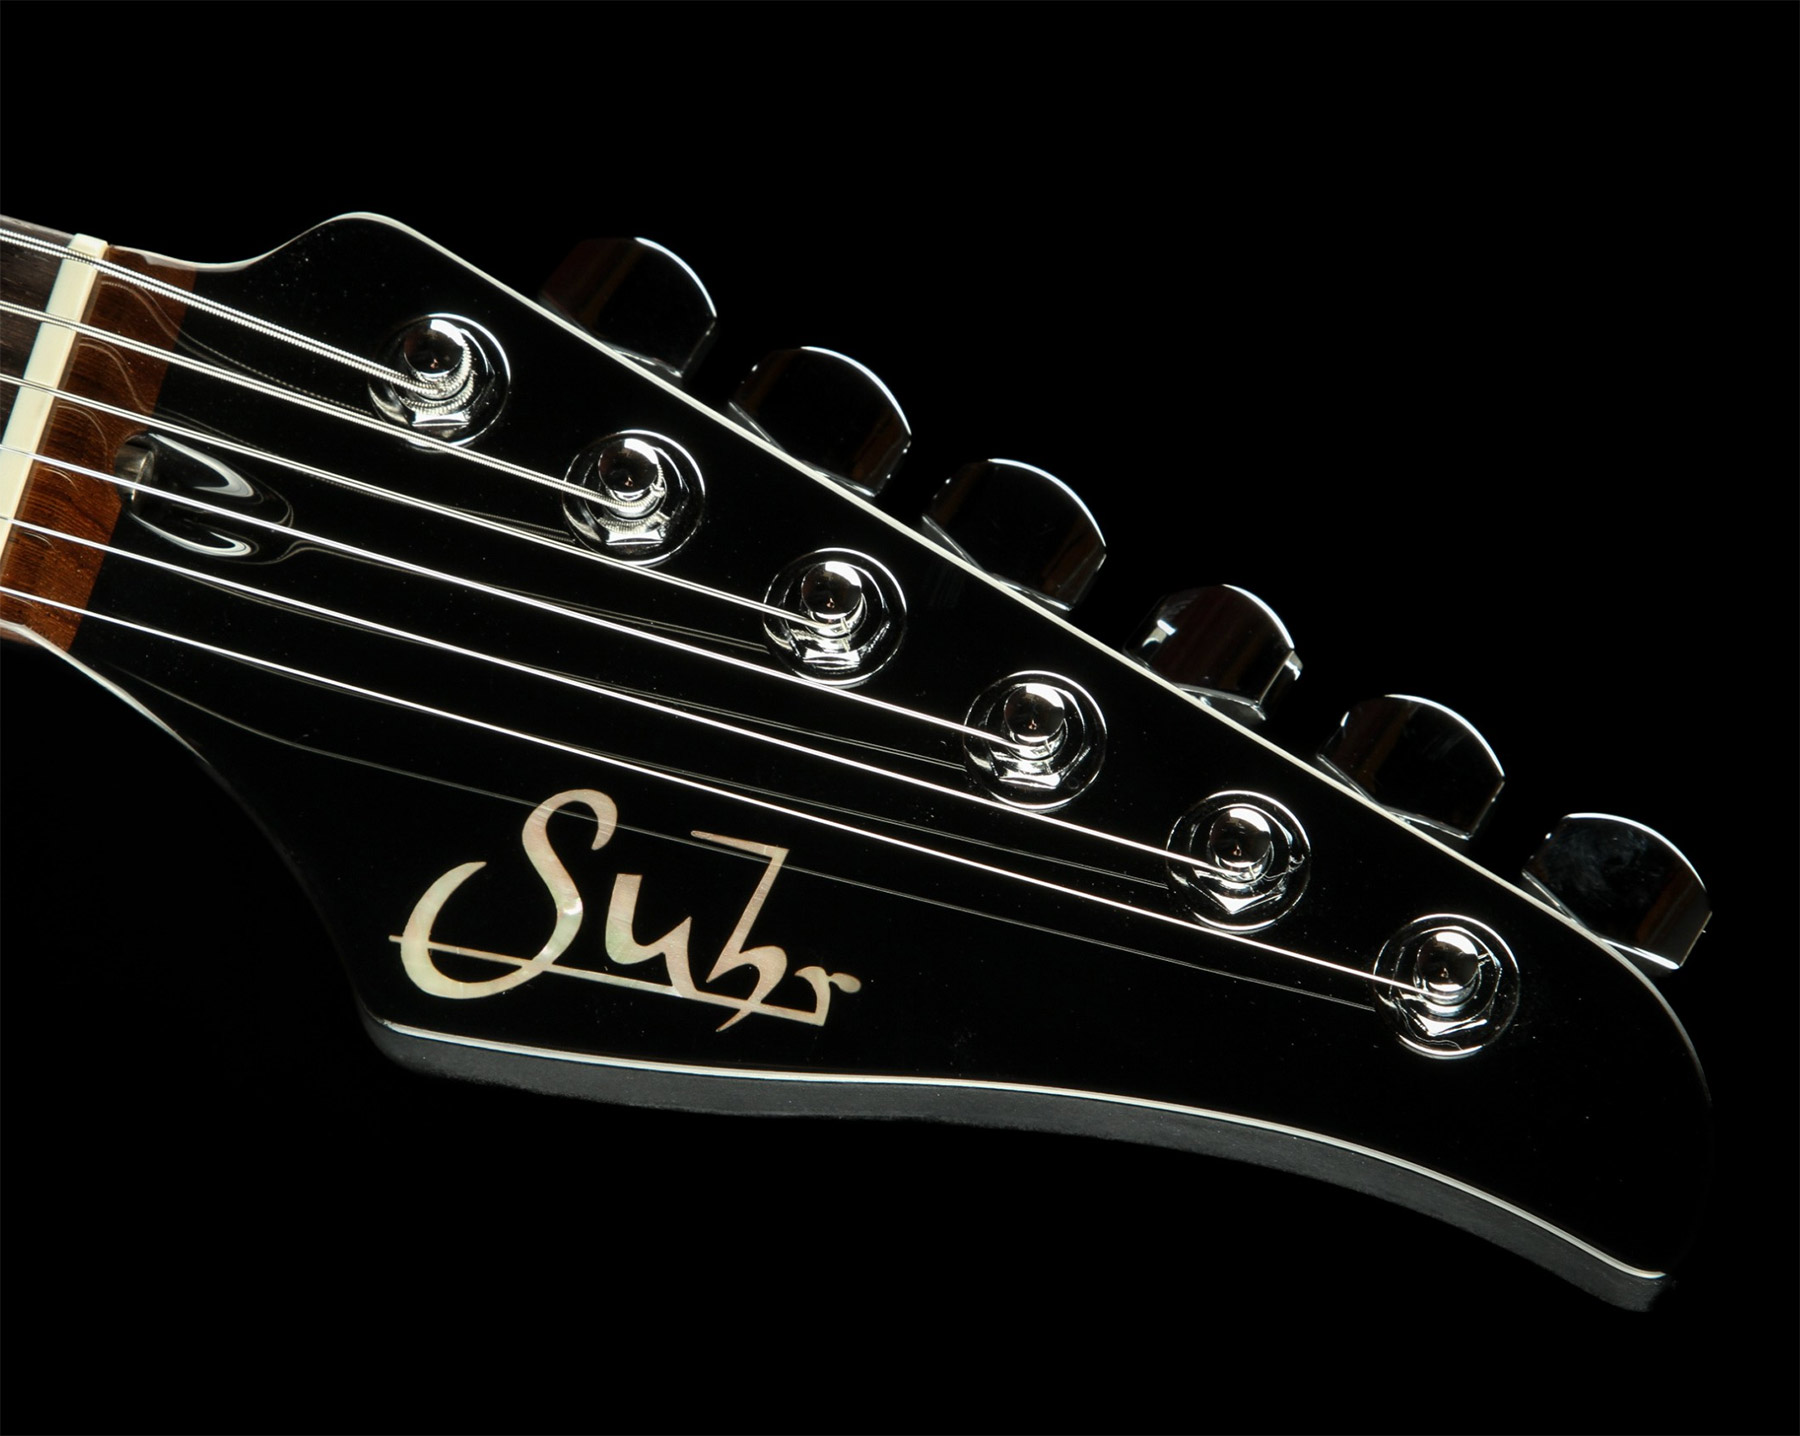 Suhr Pete Thorn Standard 01-sig-0012 Signature 2h Trem Rw - Ocean Turquoise Metallic - Elektrische gitaar in Str-vorm - Variation 7